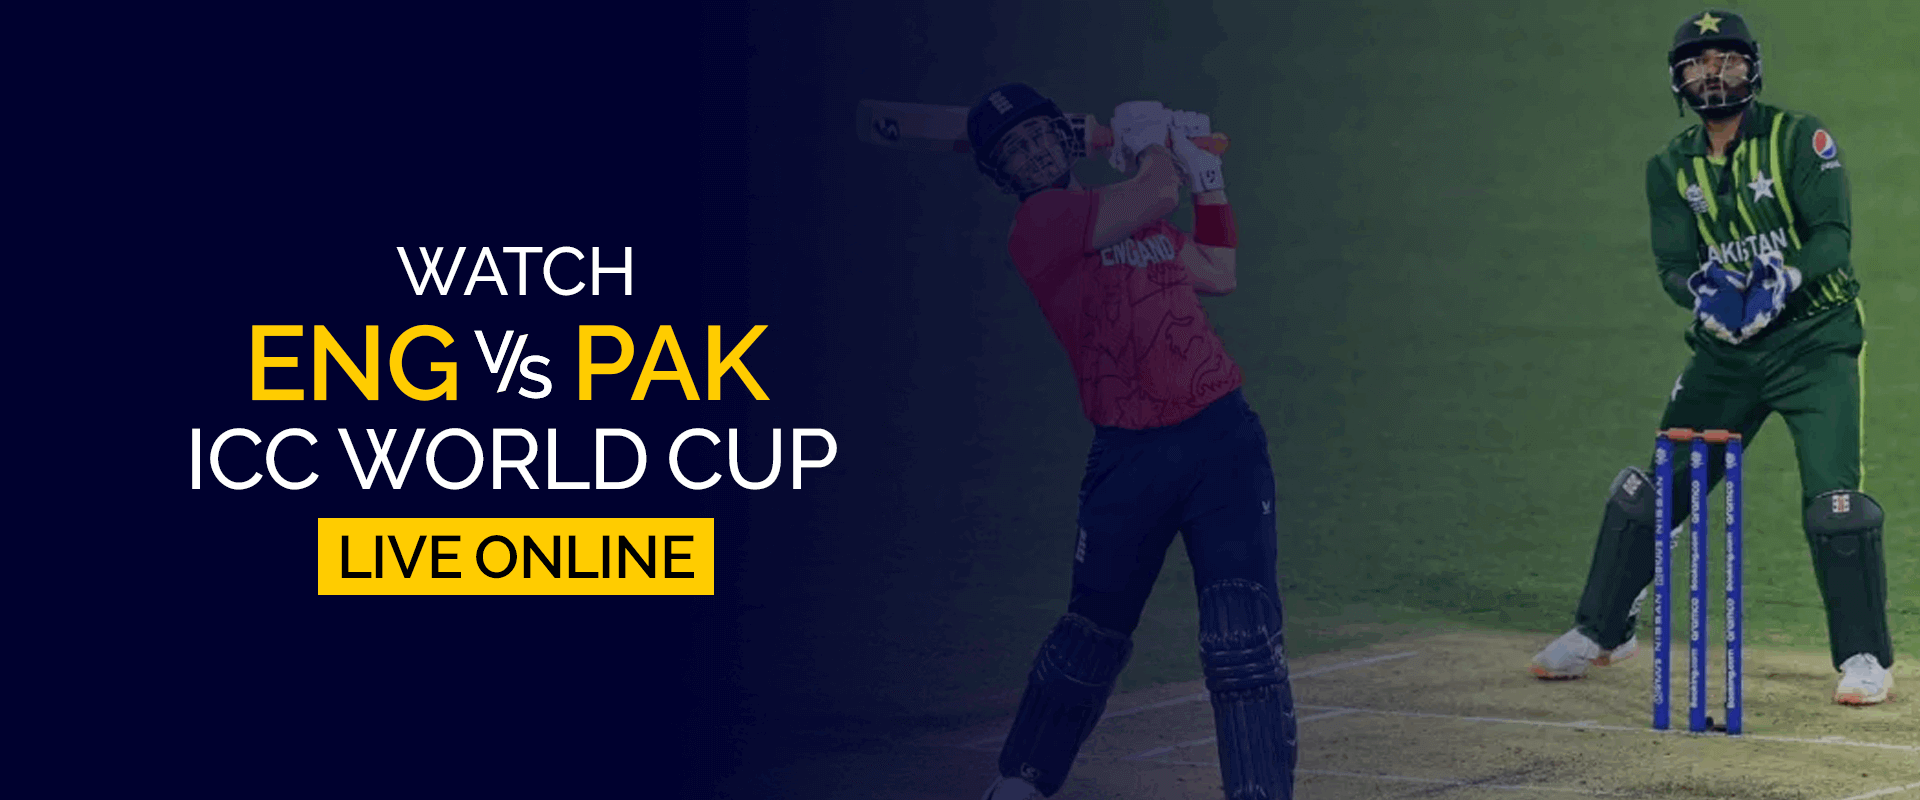 Sehen Sie sich die ICC-Weltmeisterschaft England gegen Pakistan live online an